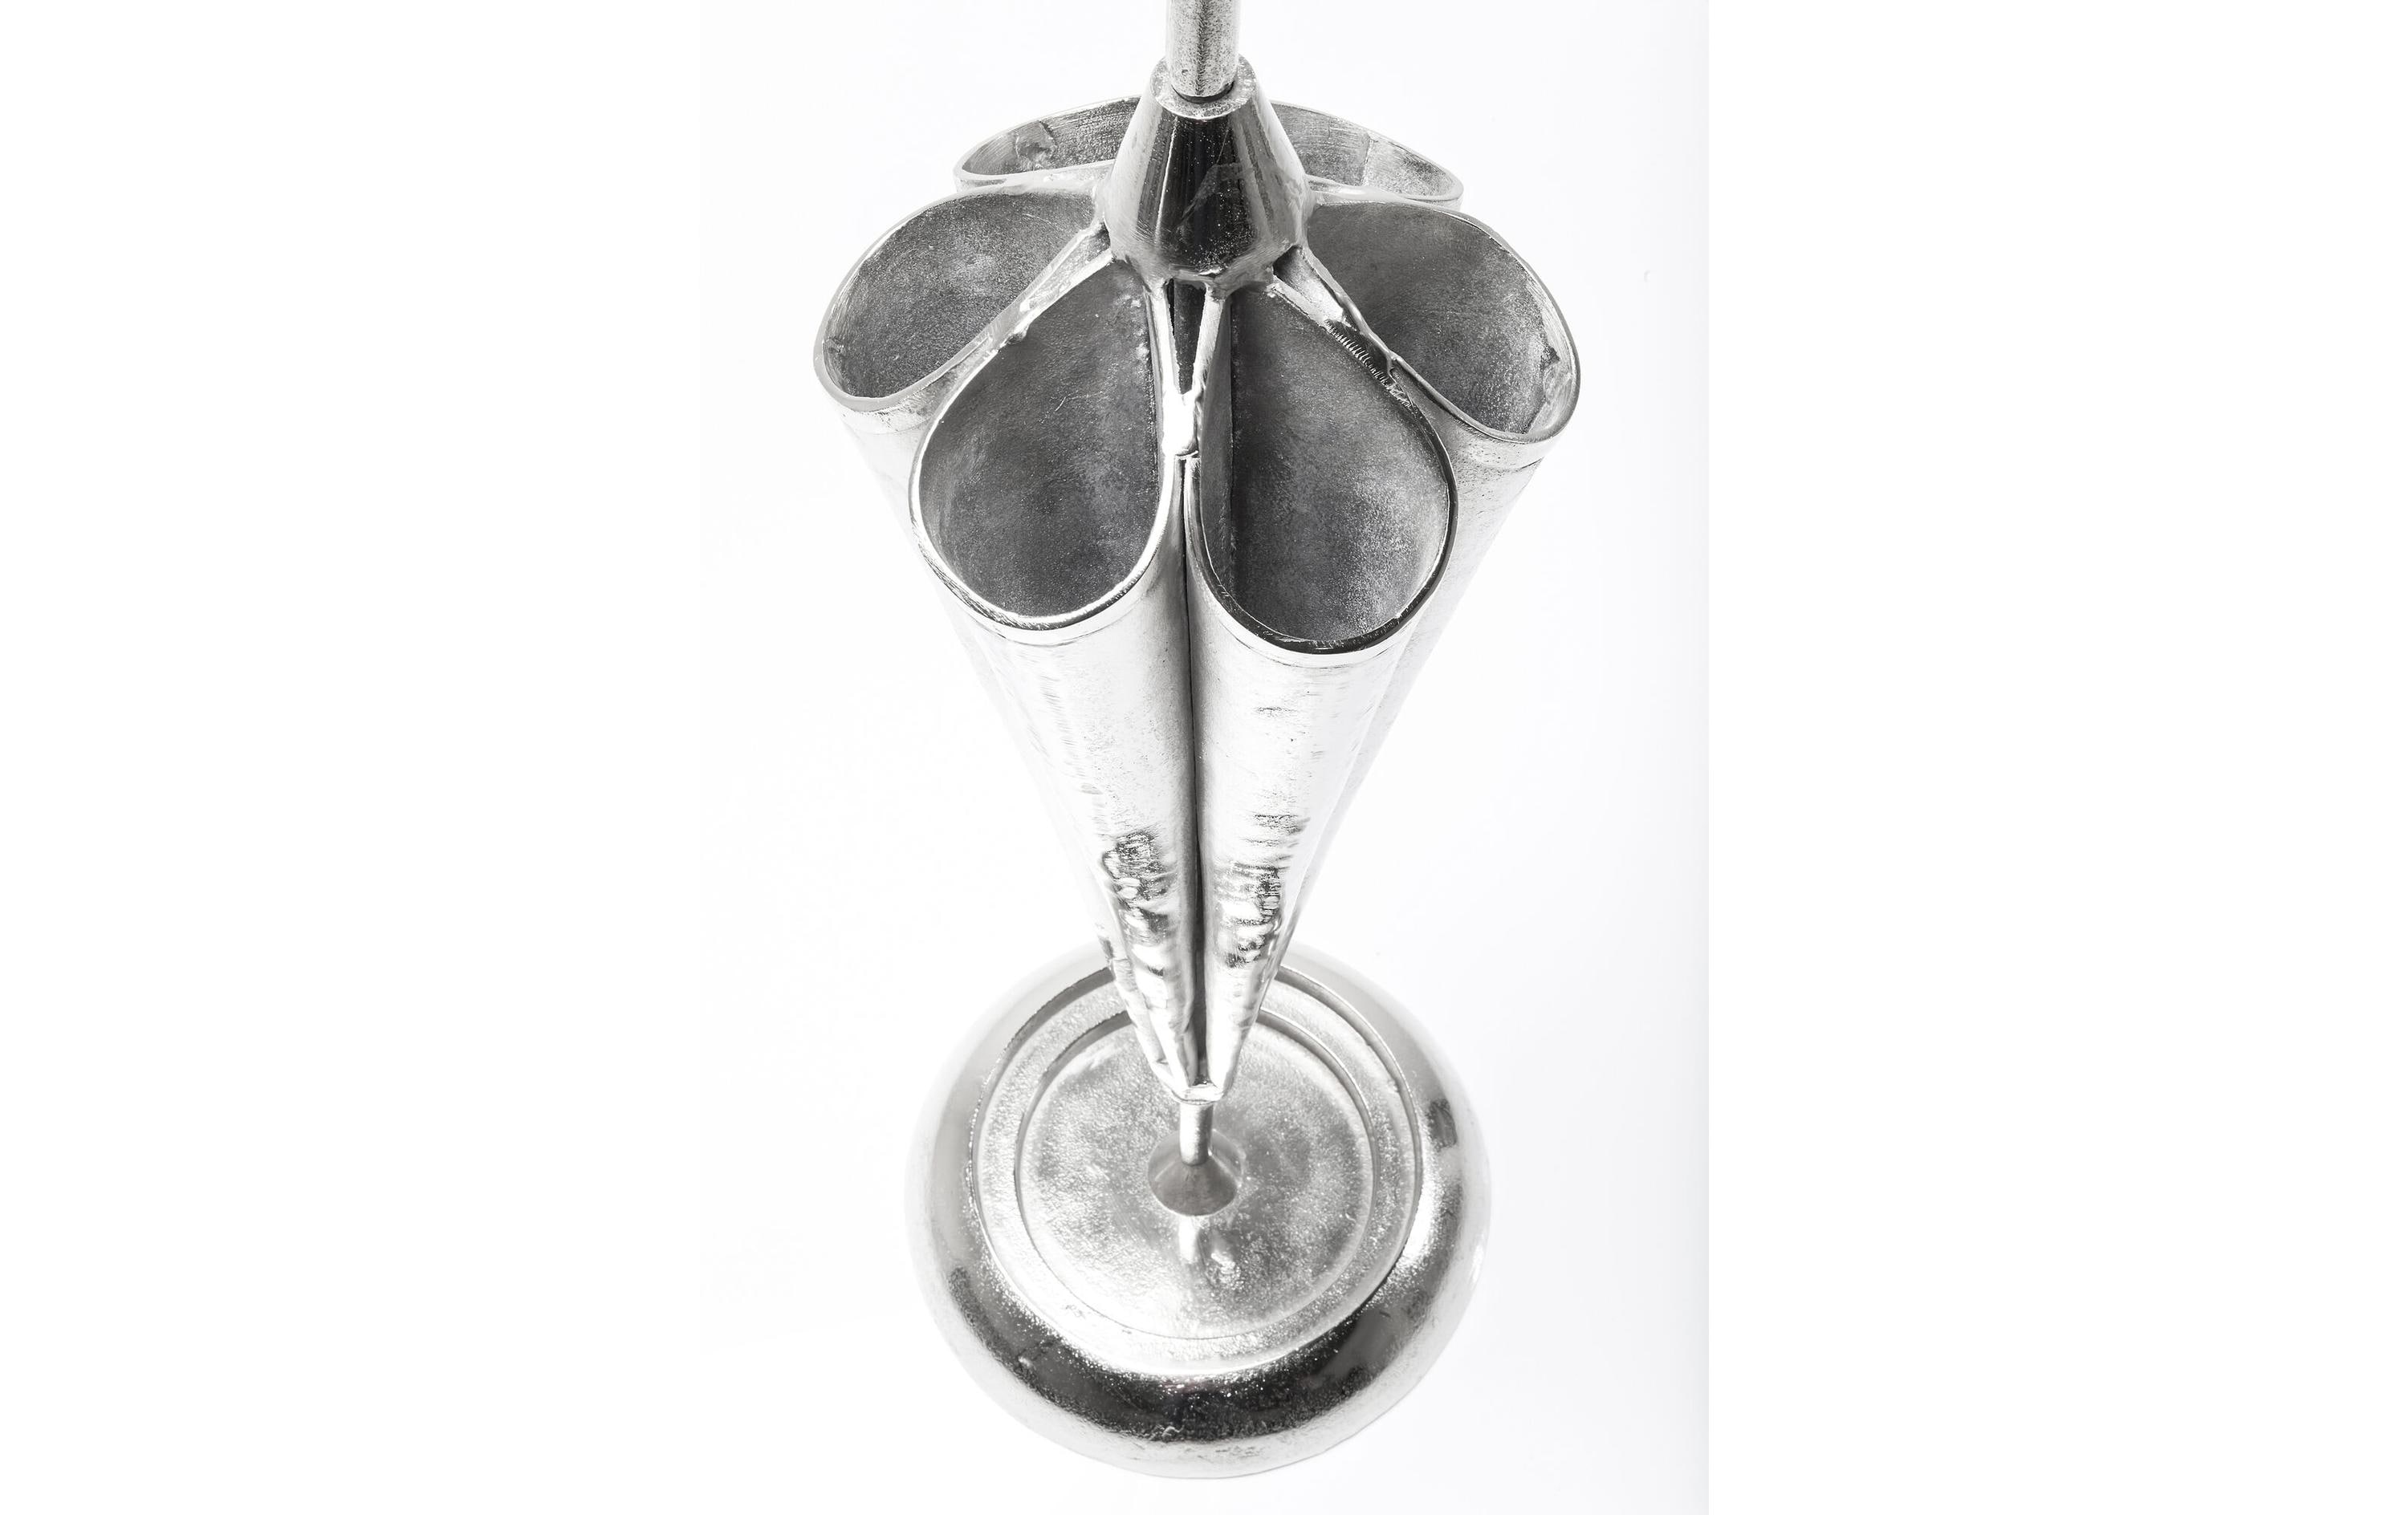 Kare Schirmständer Umbrella 100 cm, Silber